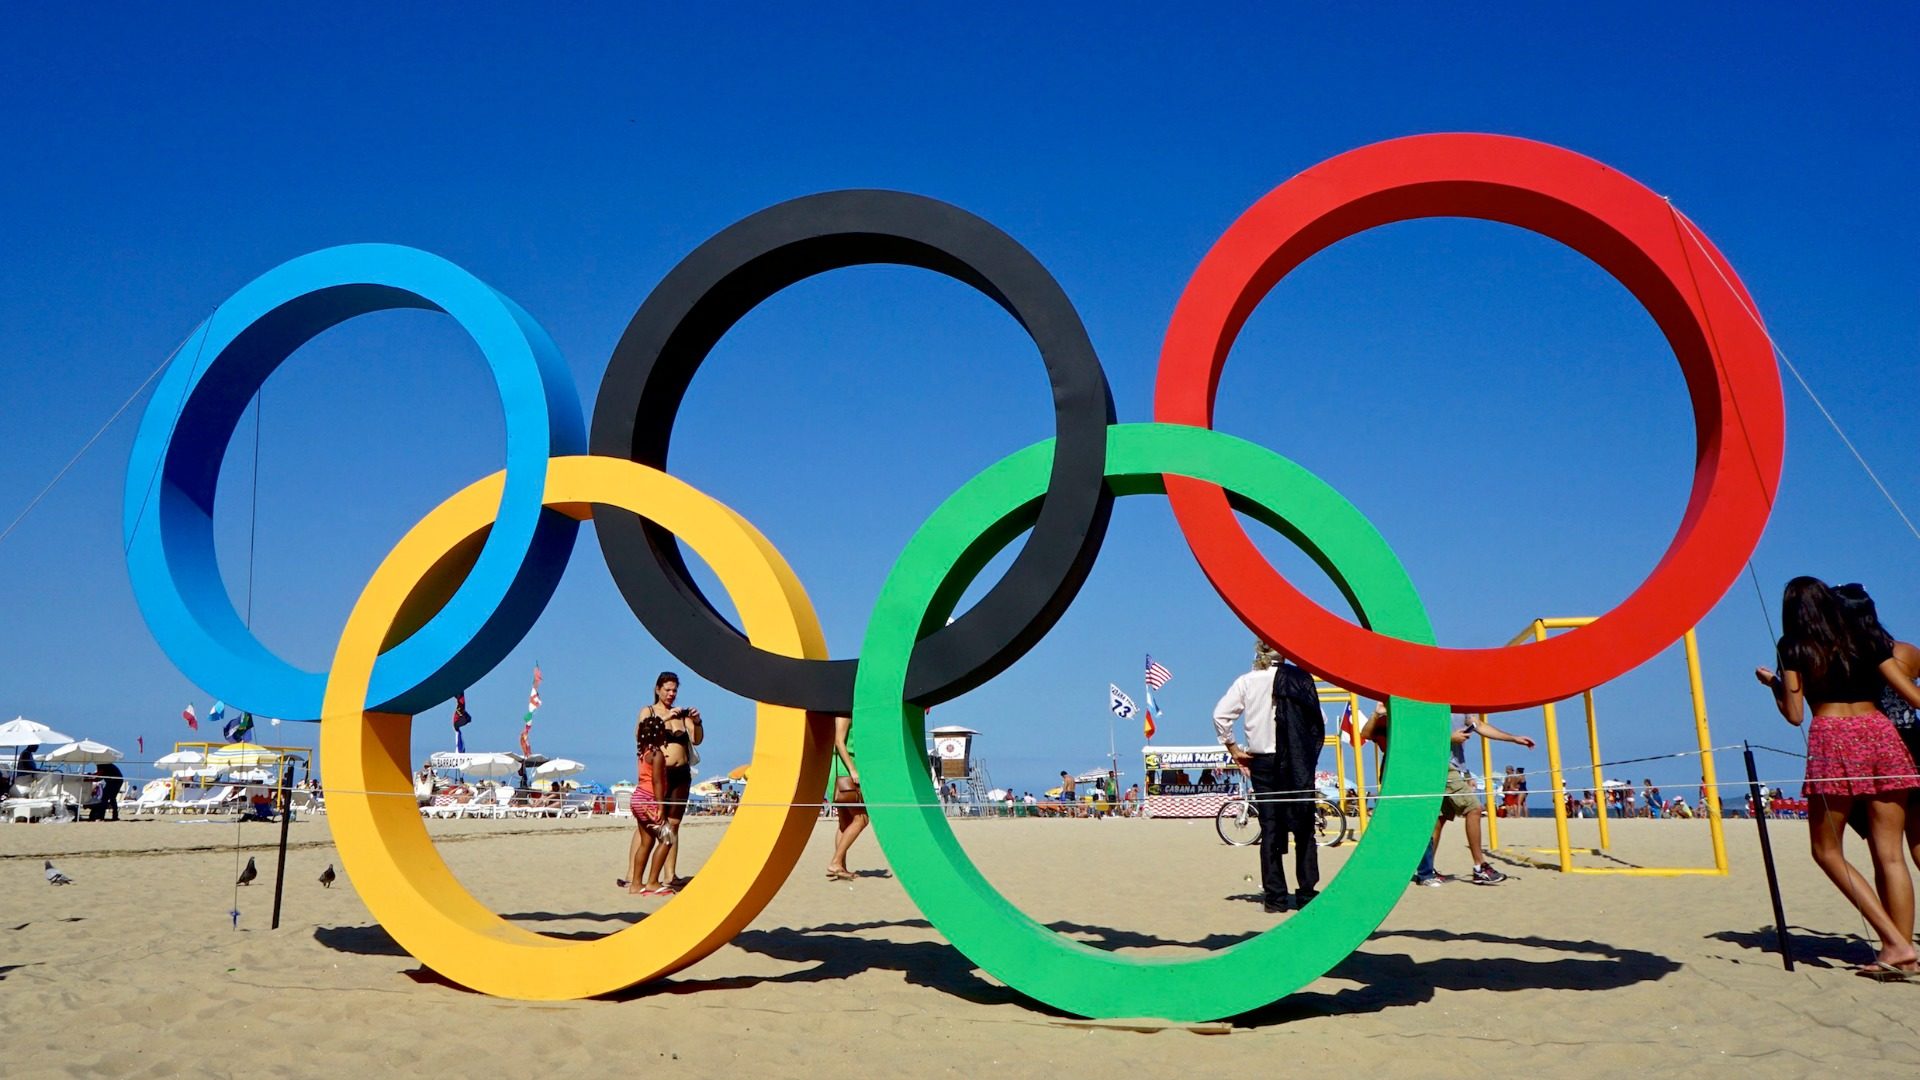 Les anneaux olympiques à Rio de Janeiro. (Photo: Flickr/alobos Life/CC BY-NC-ND 2.0)